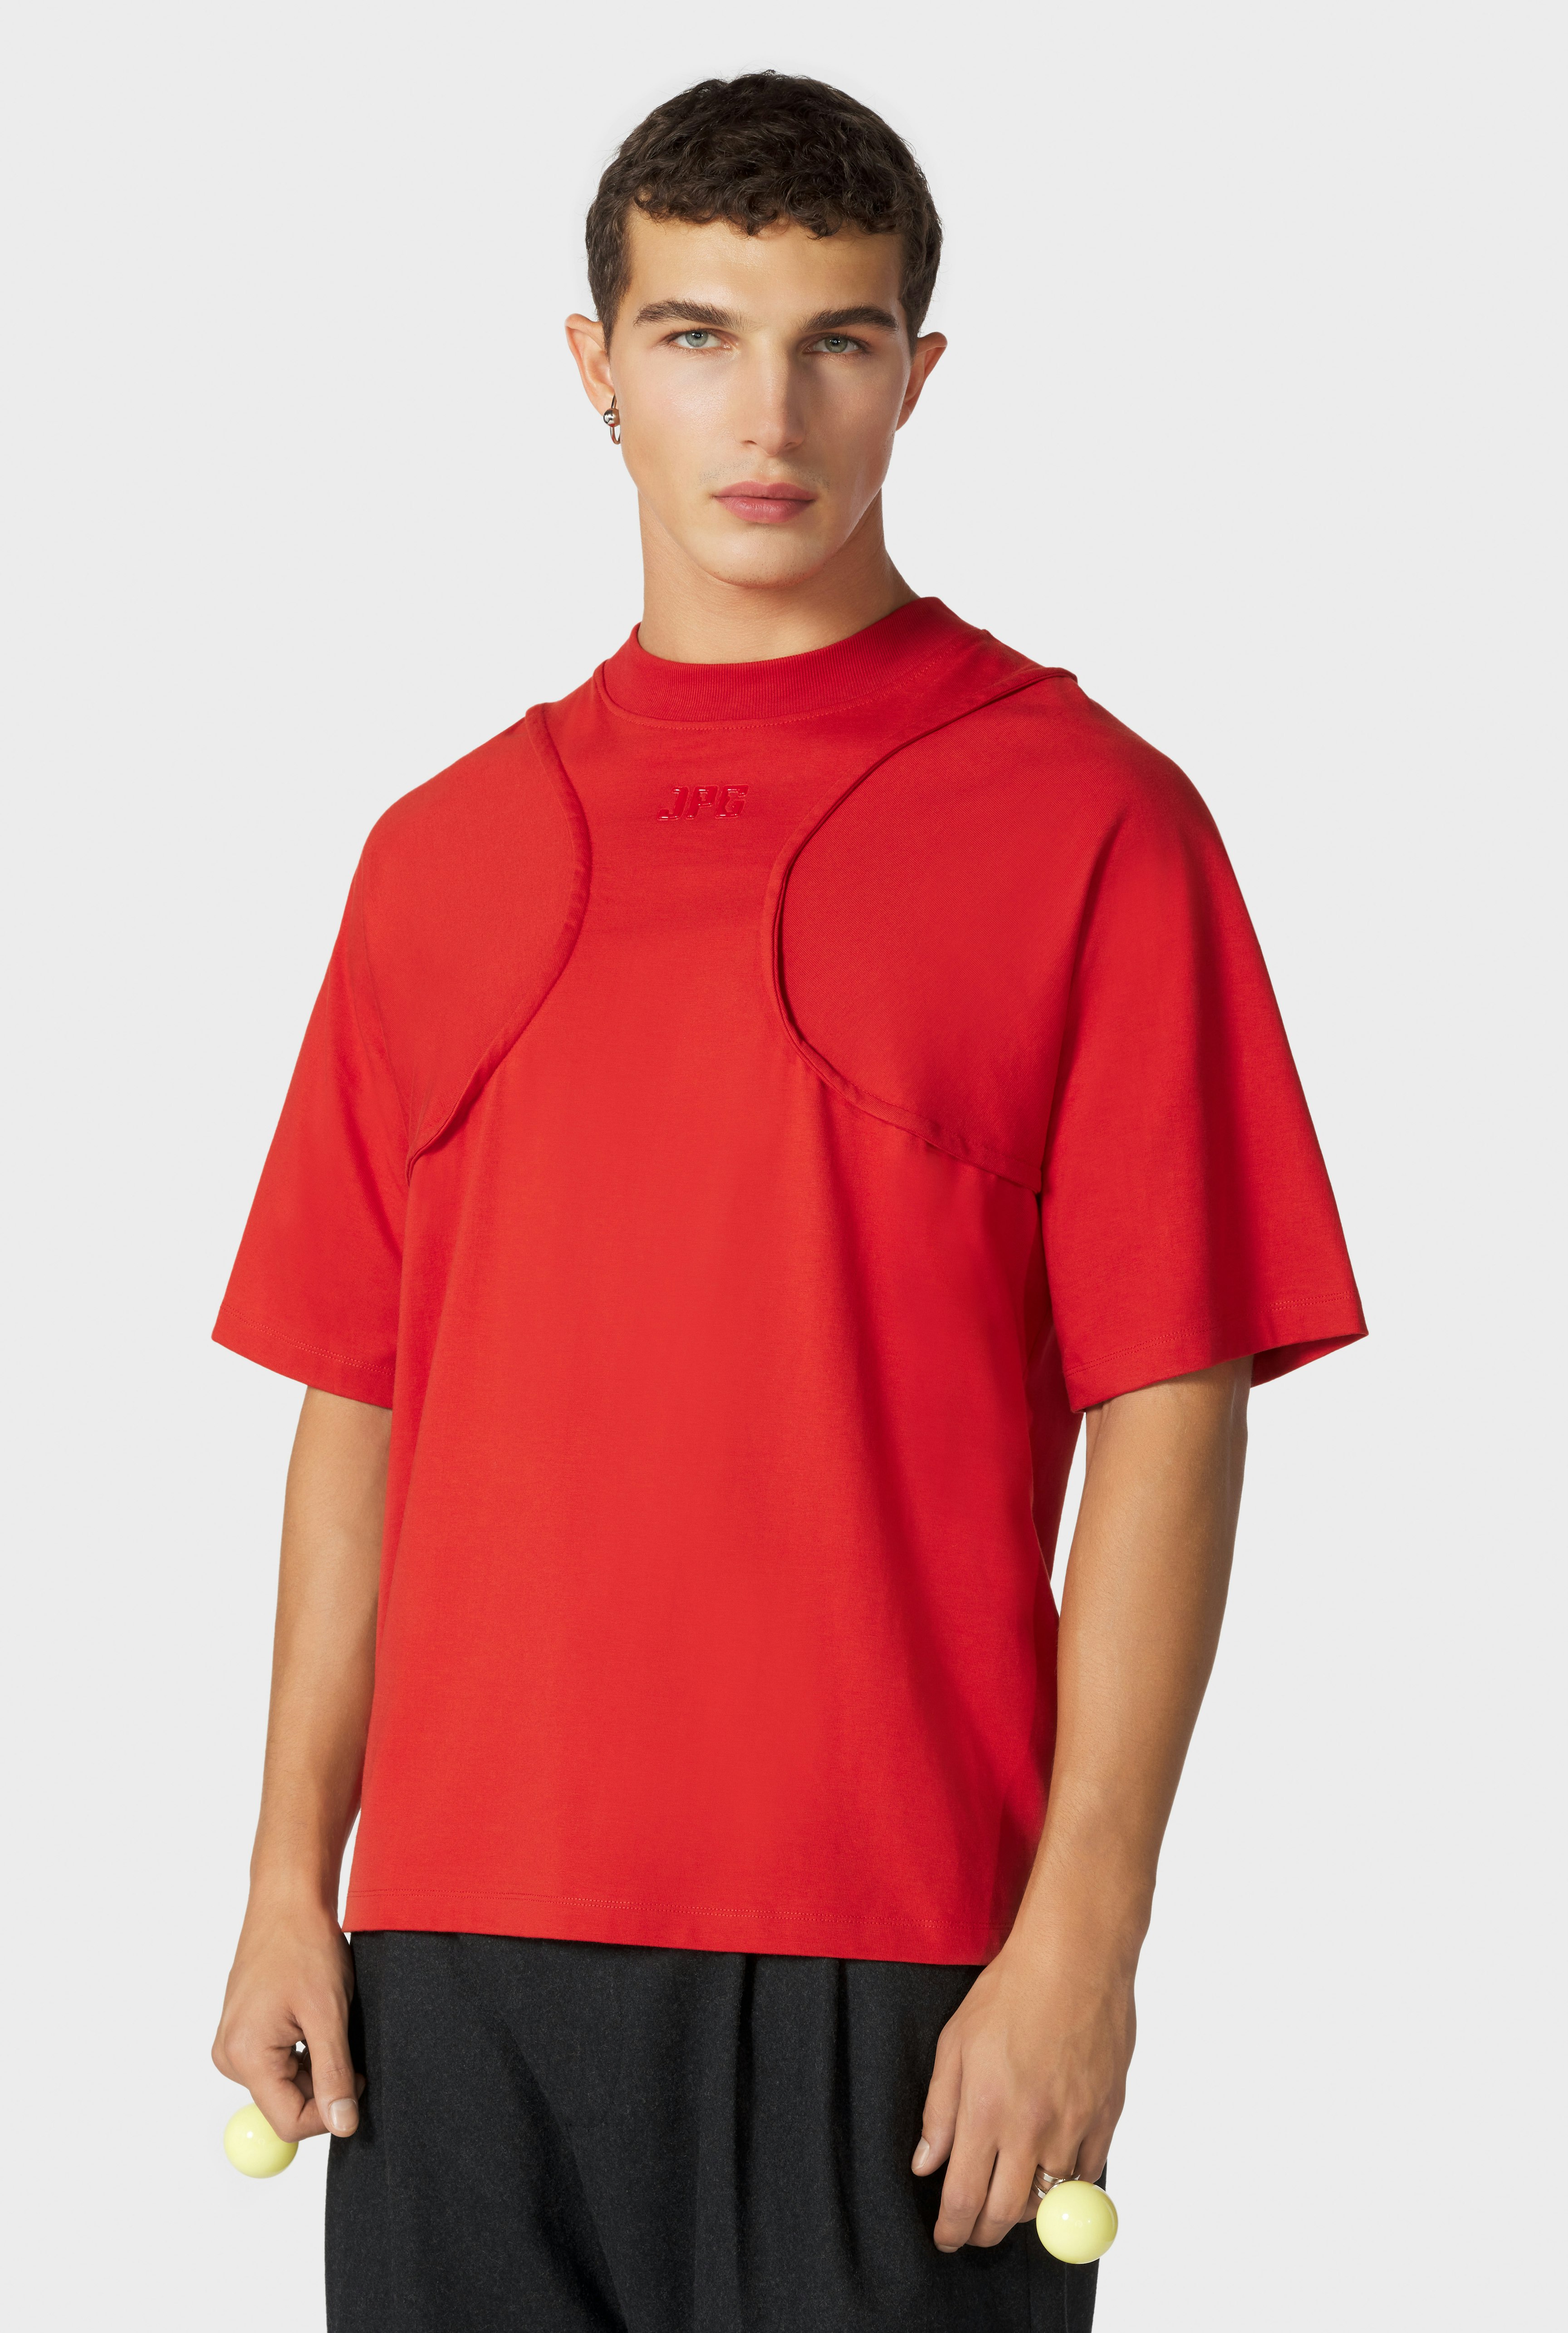 The Red JPG T-Shirt Jean Paul Gaultier